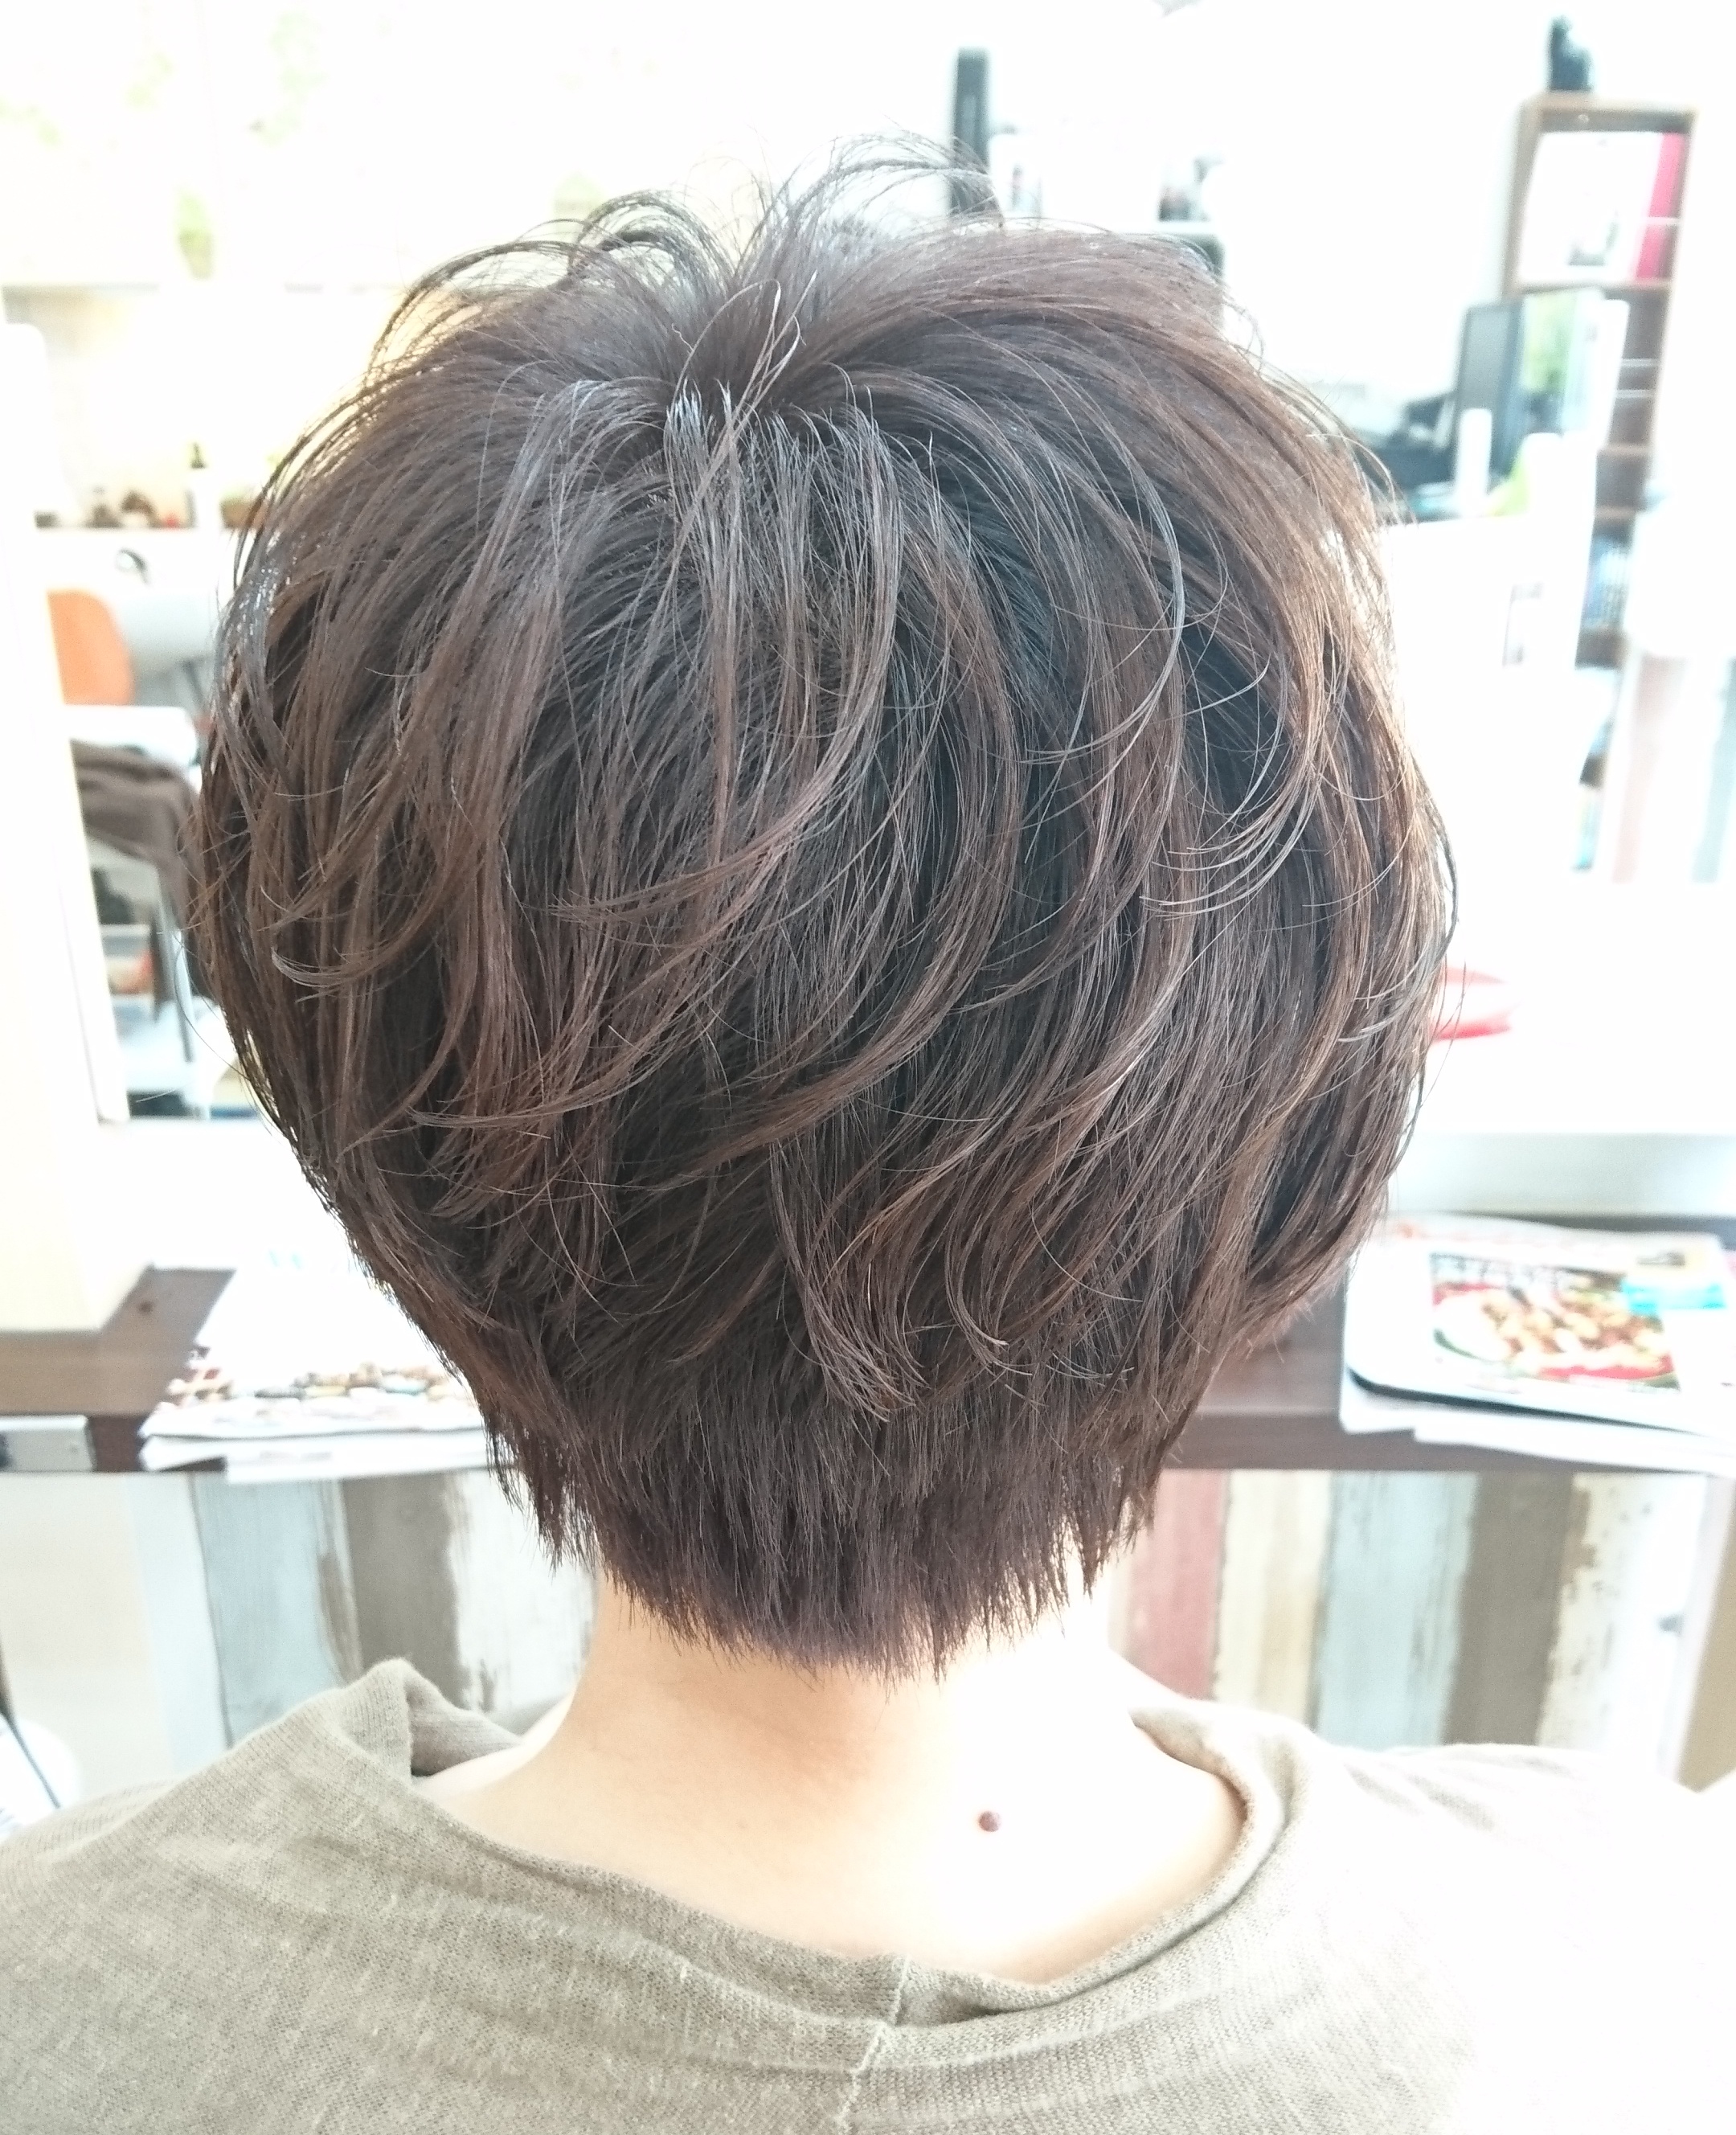 とれかけパーマで楽しむショート 広島 クセ毛美容師ニコのクセ毛とエイジングケア極めブログ